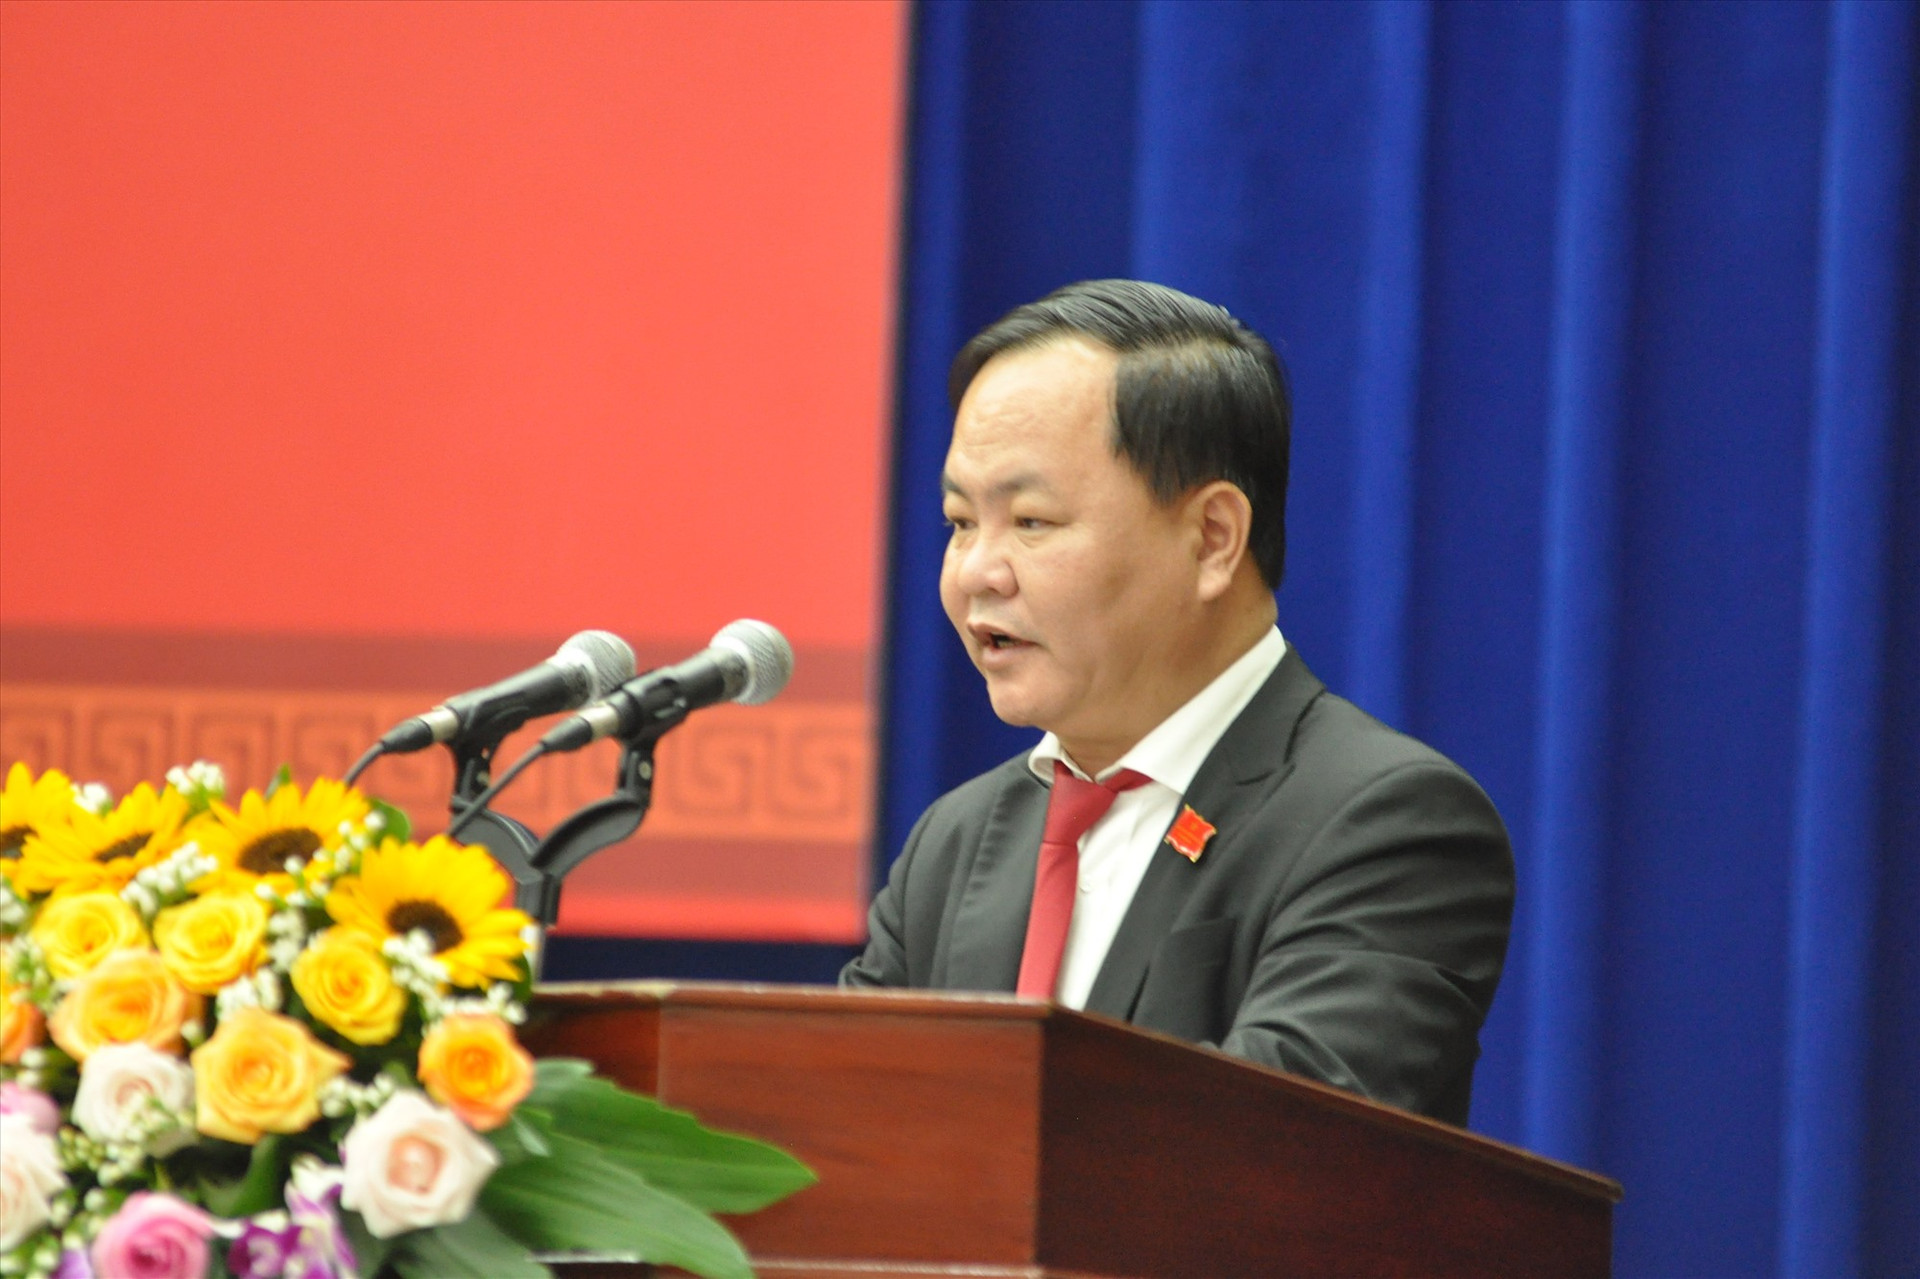 Phó Chủ tịch UBND tỉnh Nguyễn Hồng Quang trình bày báo cáo trả lời kiến nghị của cử tri sau Kỳ họp thứ 9, HĐND tỉnh (khóa X) tại Kỳ họp thứ 12 diễn ra sáng nay 7/12. Ảnh: P.Đ